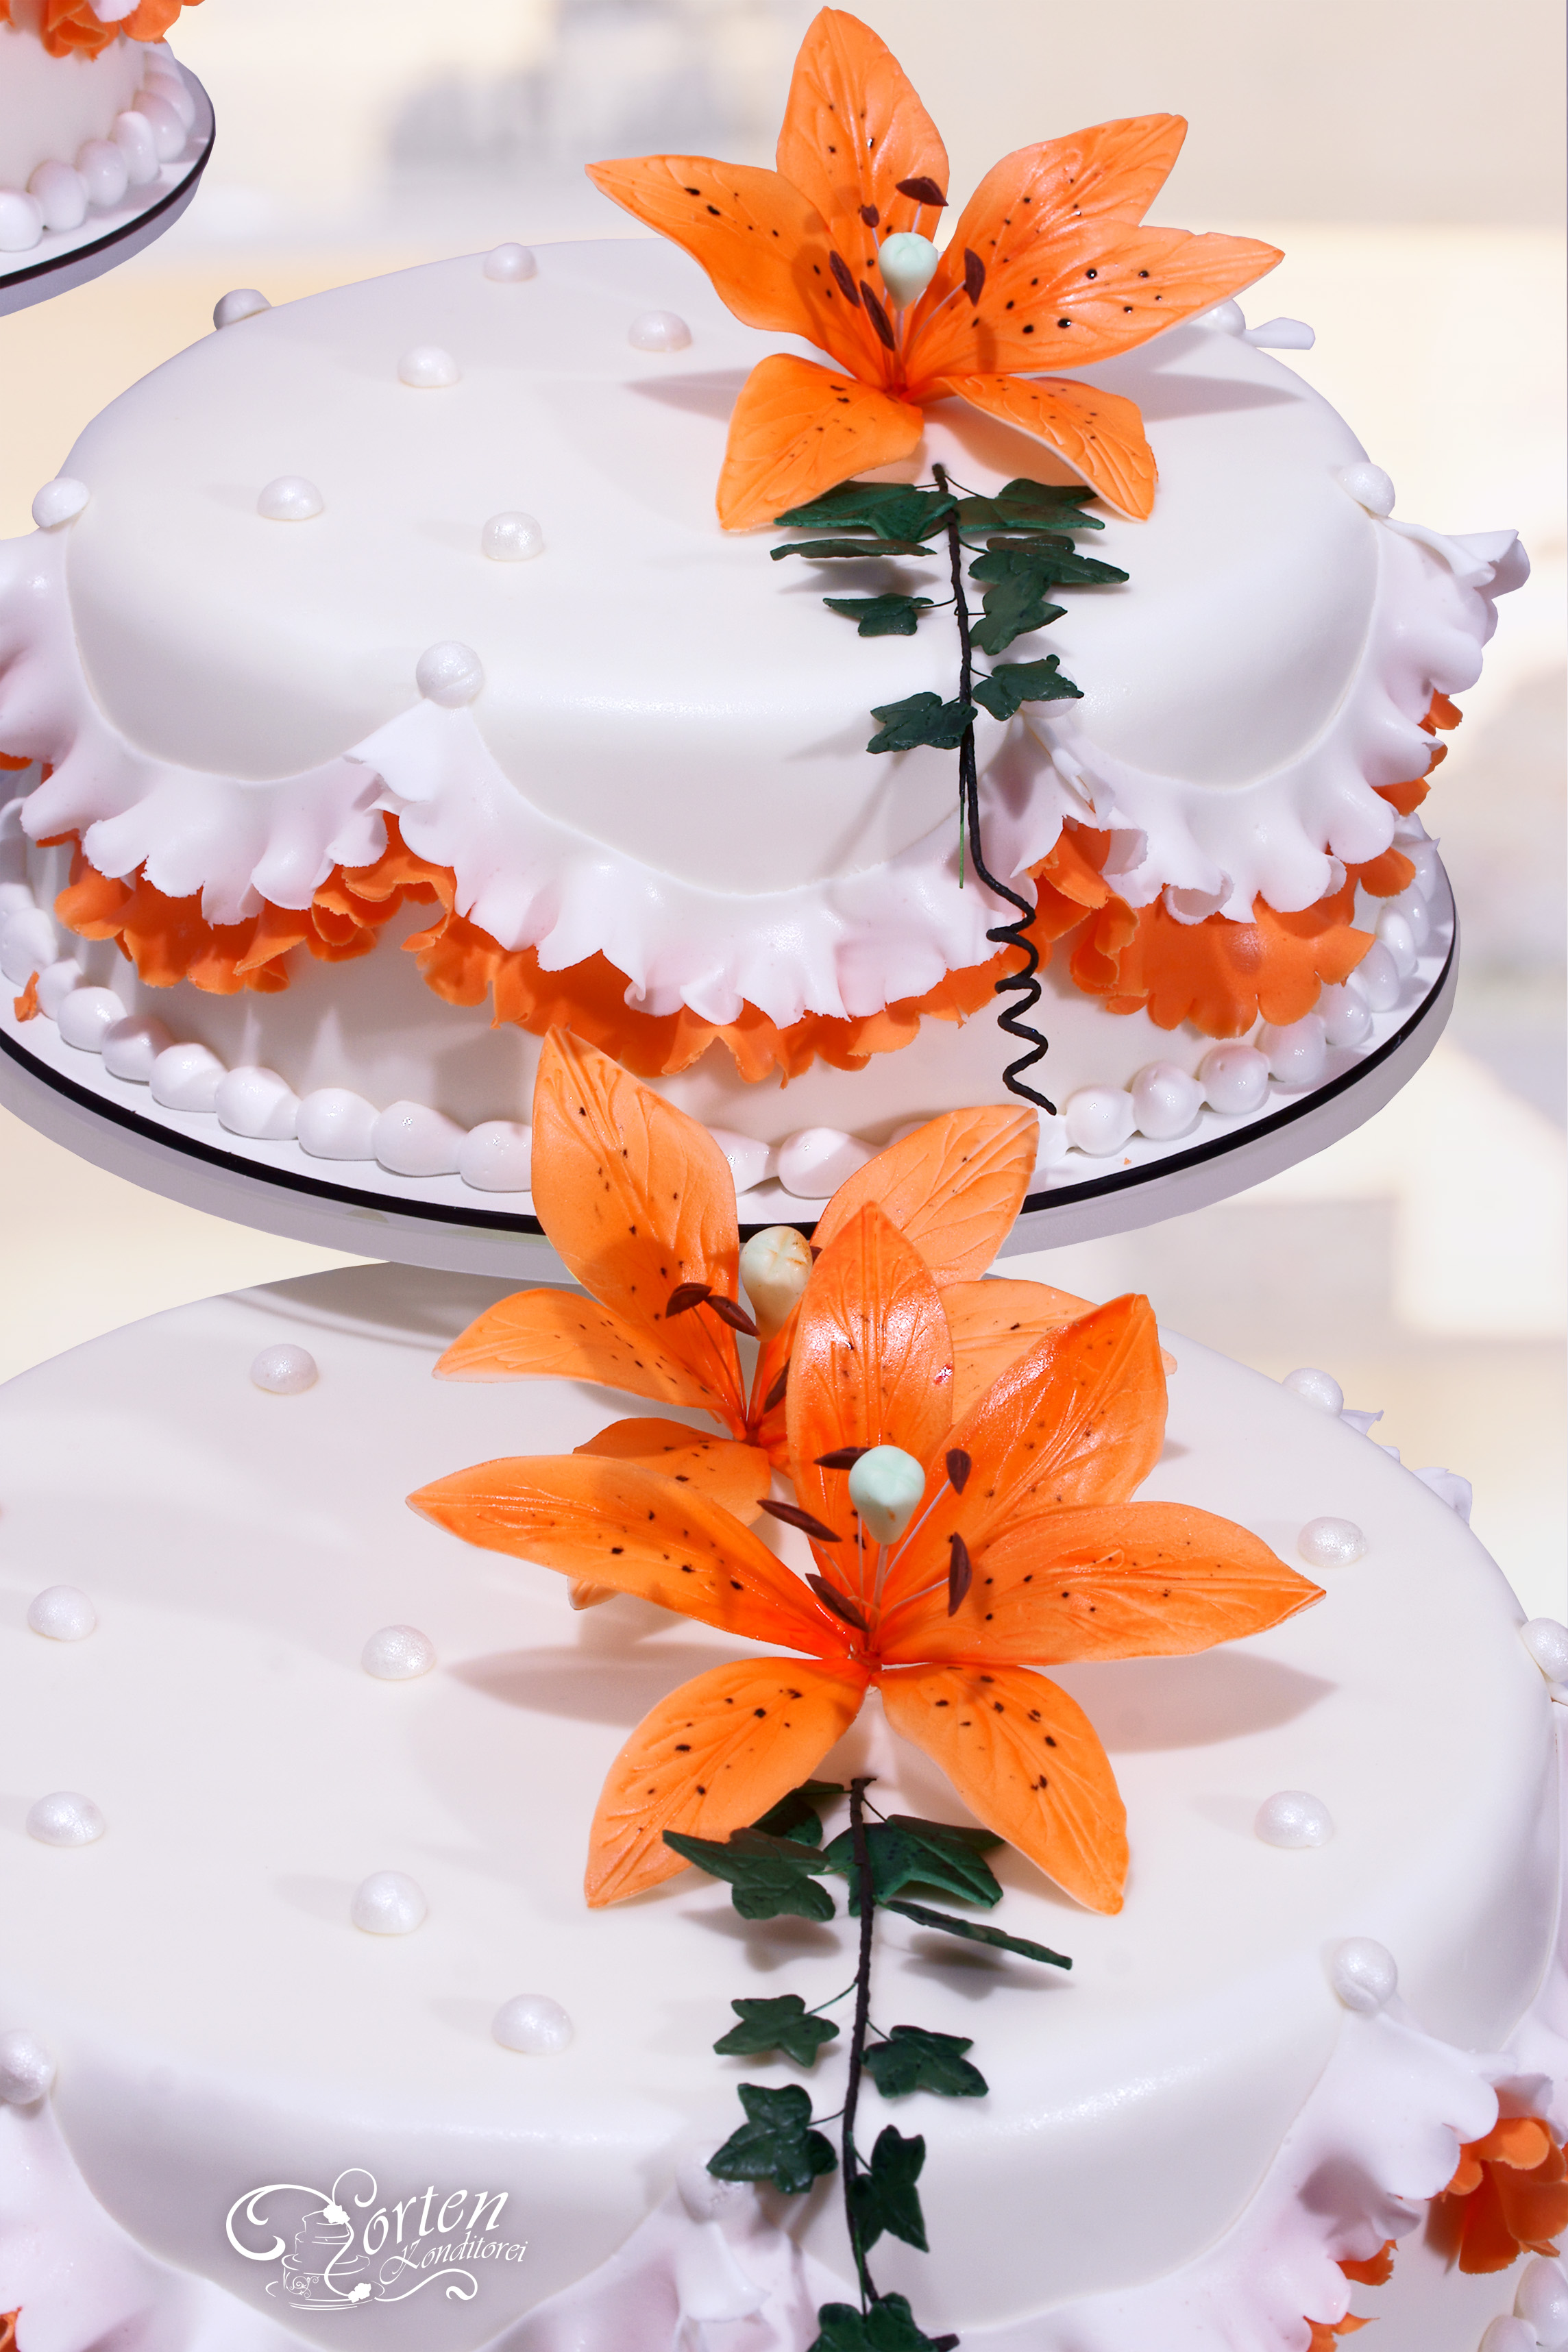 Detailansicht Hochzeitstorte mit lilien in orangenem Ton..